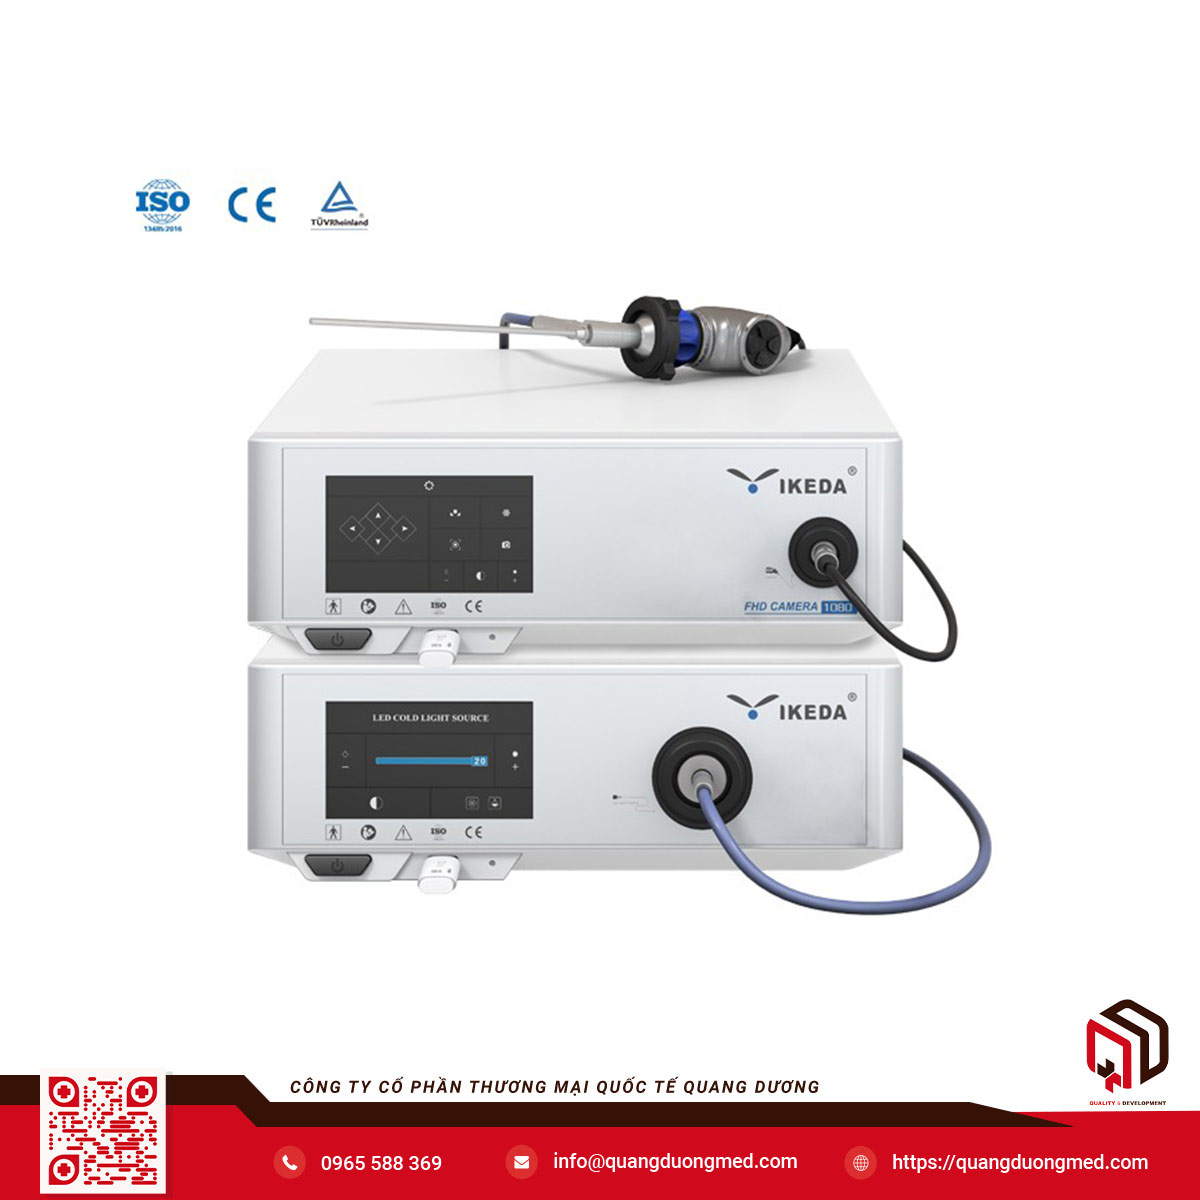 Máy soi tai mũi họng Full HD - Model: YKD-9002 - Thương hiệu: IKEDA - Xuất xứ: Trung Quốc